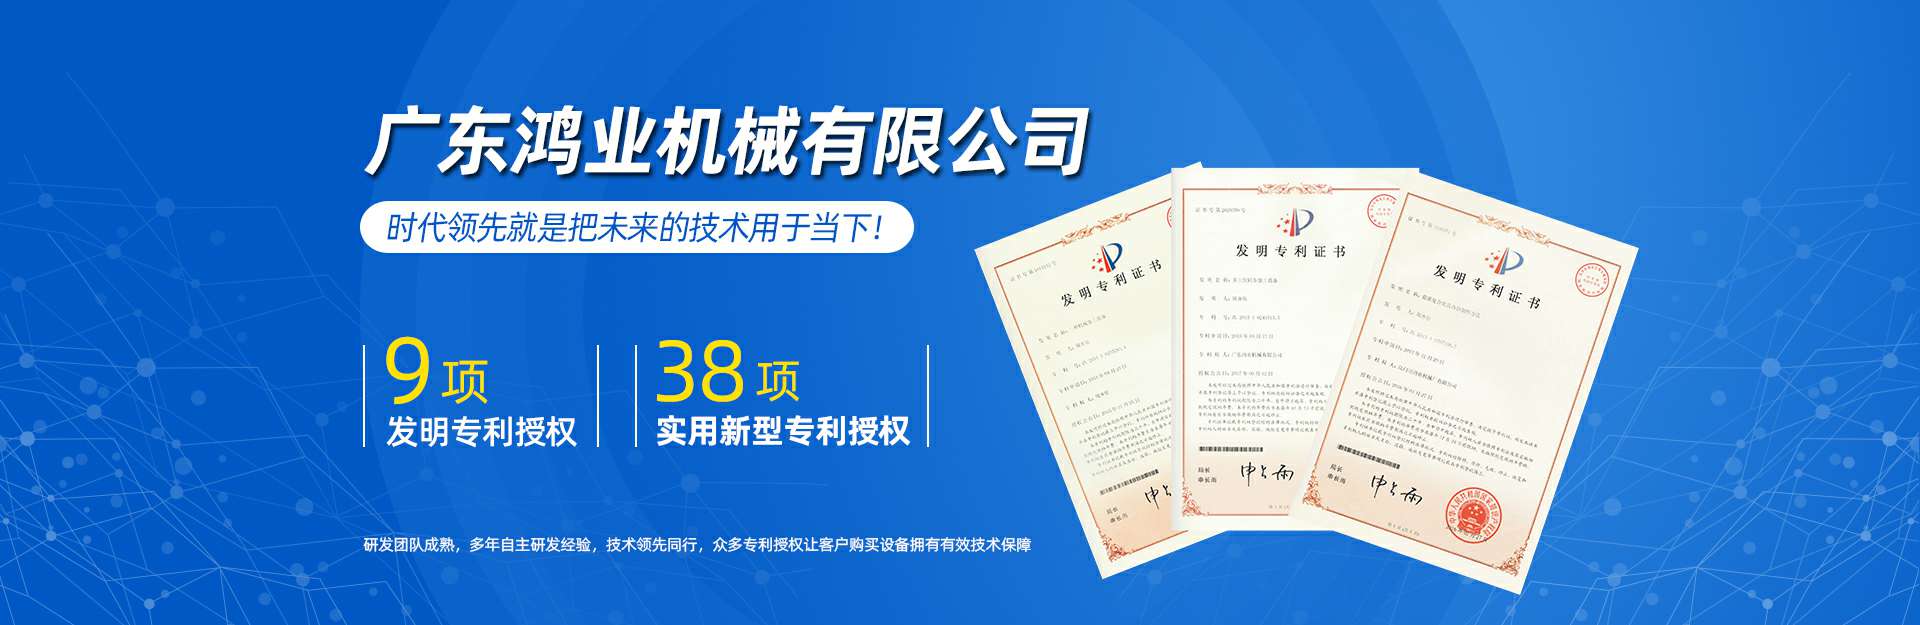 广东鸿业机械专利证书